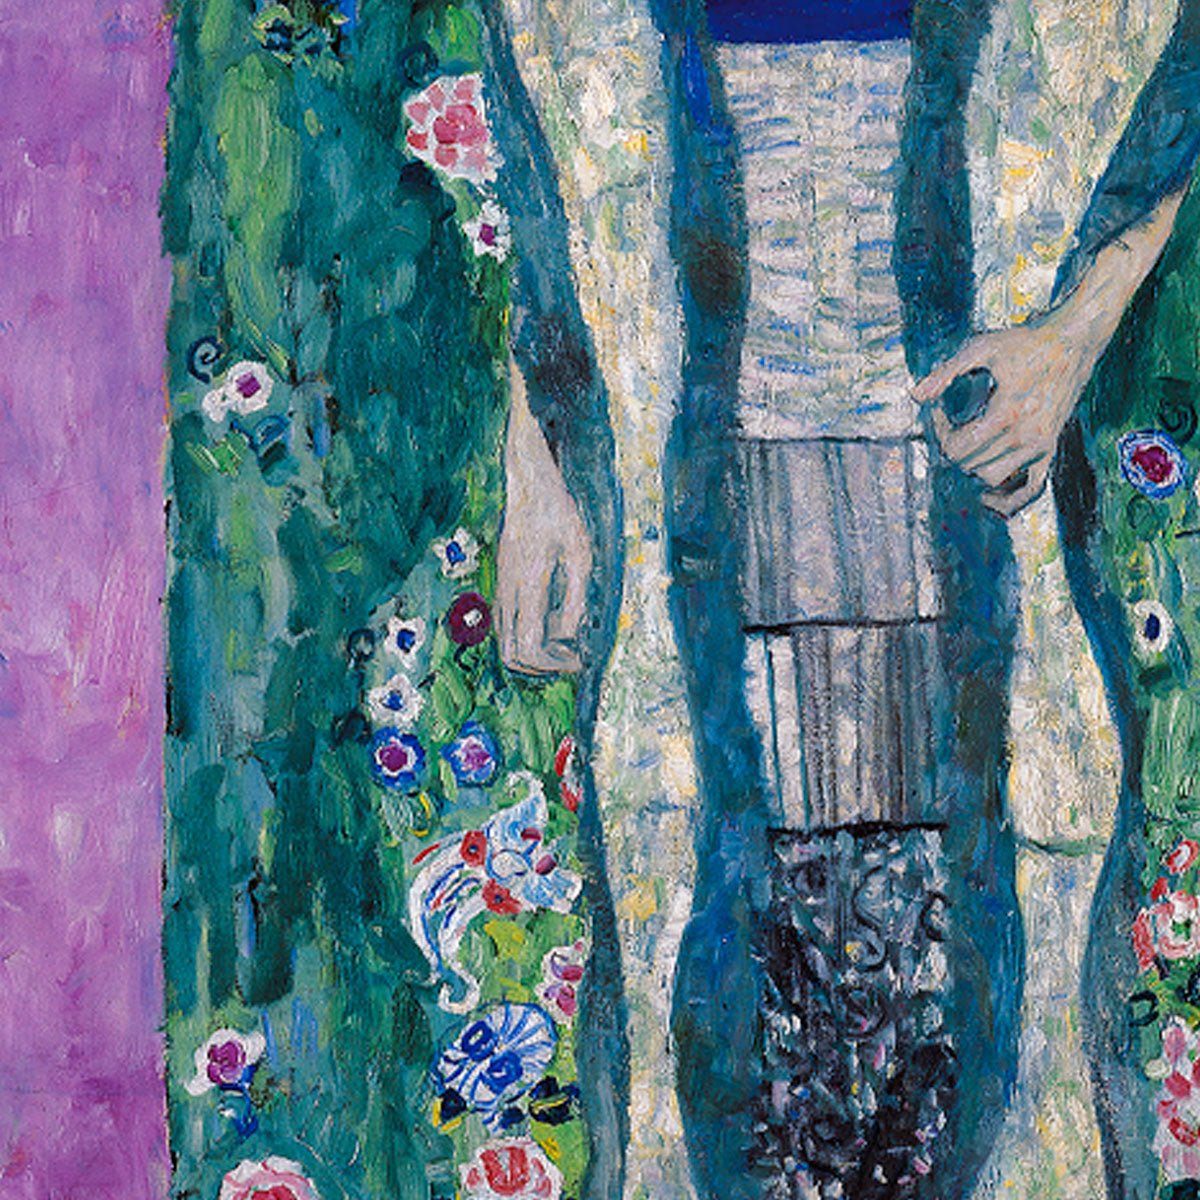 Portrait of Adele Bloch Bauer by Gustav Klimt Art Exhibition Poster